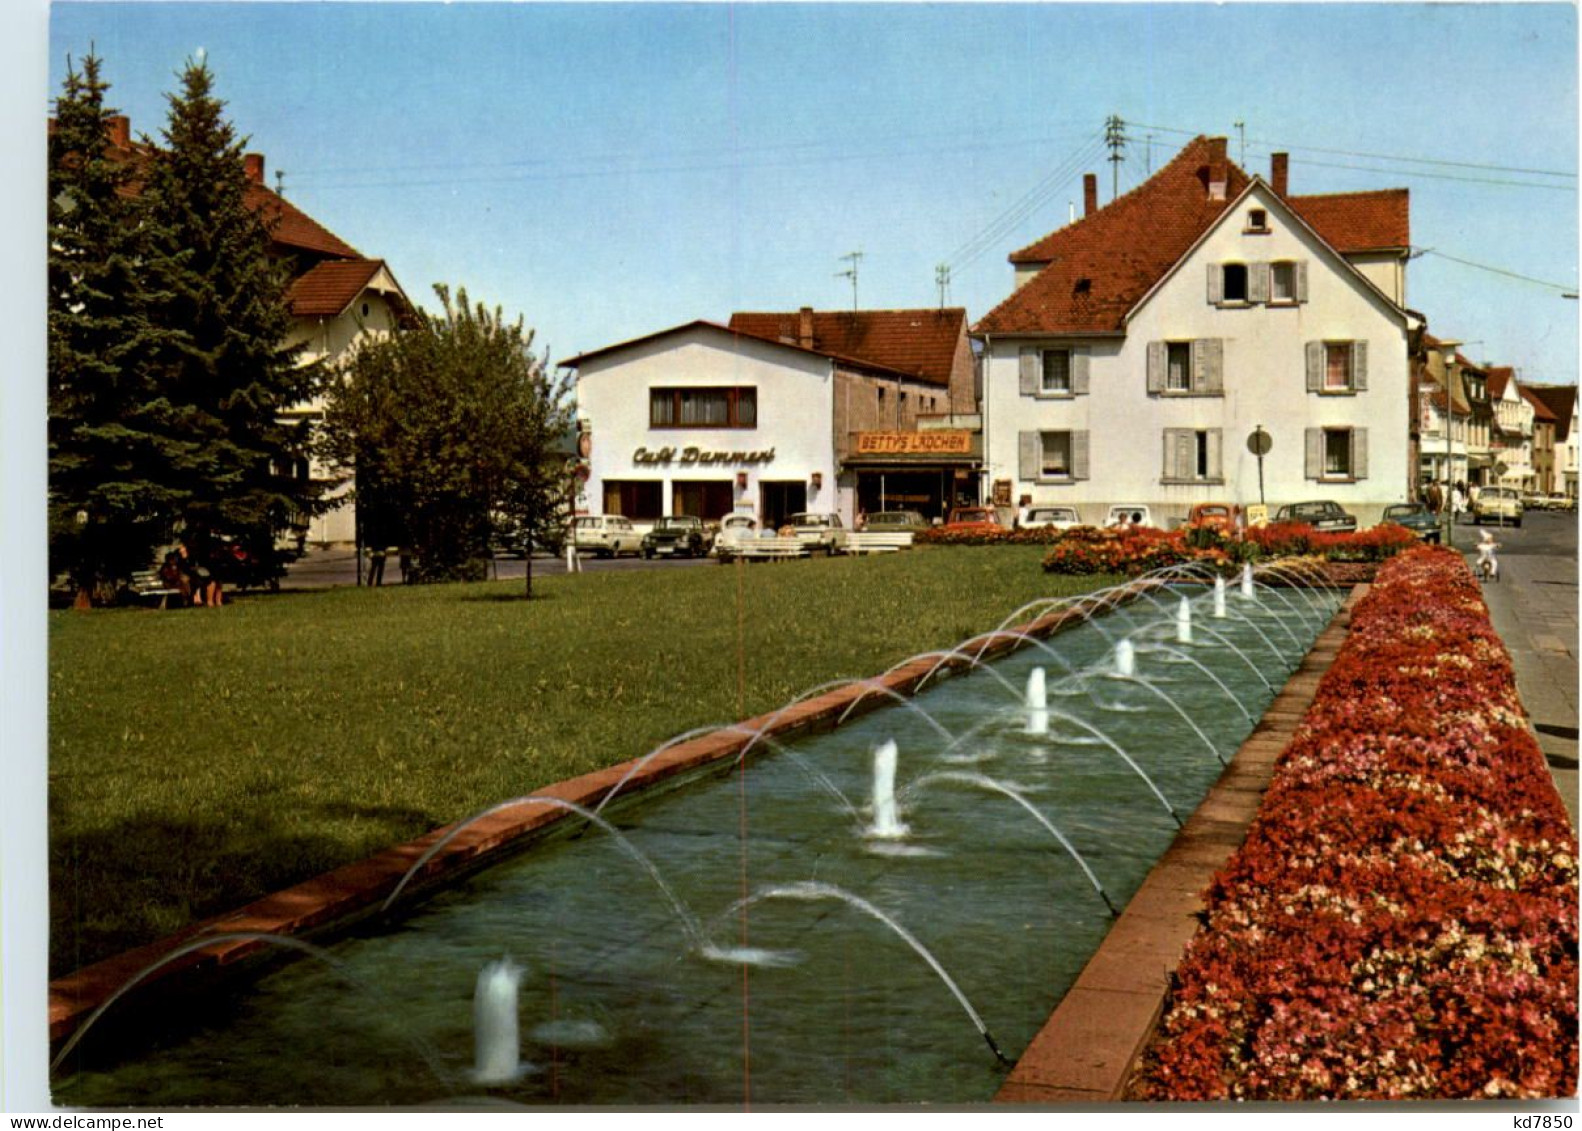 Bad König Im Odenwald, Wasserspiele Am Bahnhof - Bad Koenig